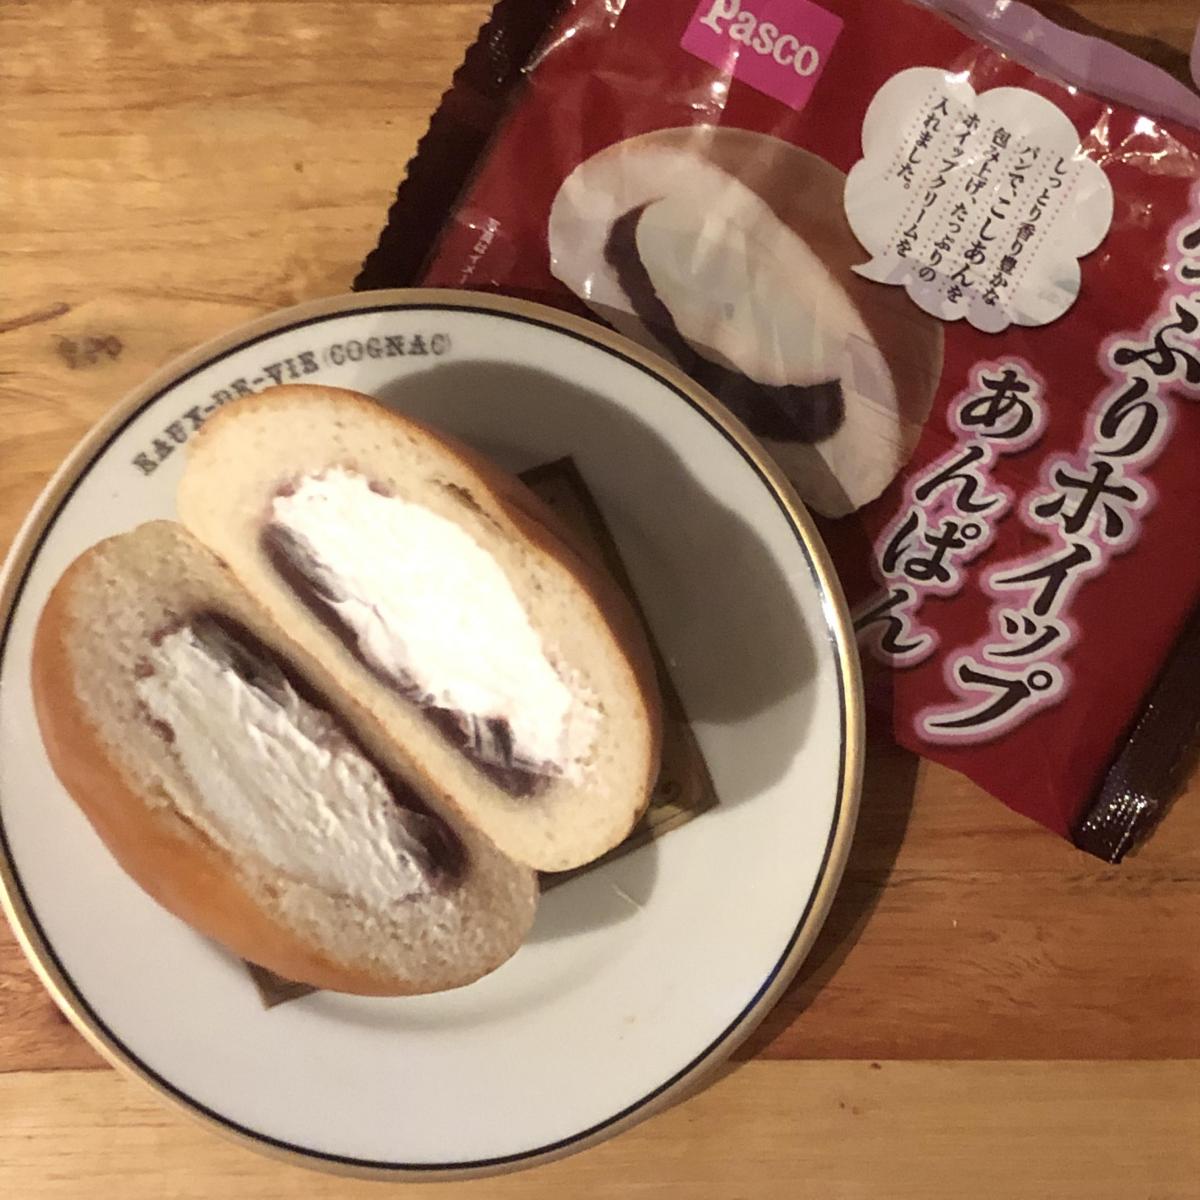 敷島製パン Pasco たっぷりホイップあんぱんの商品ページ